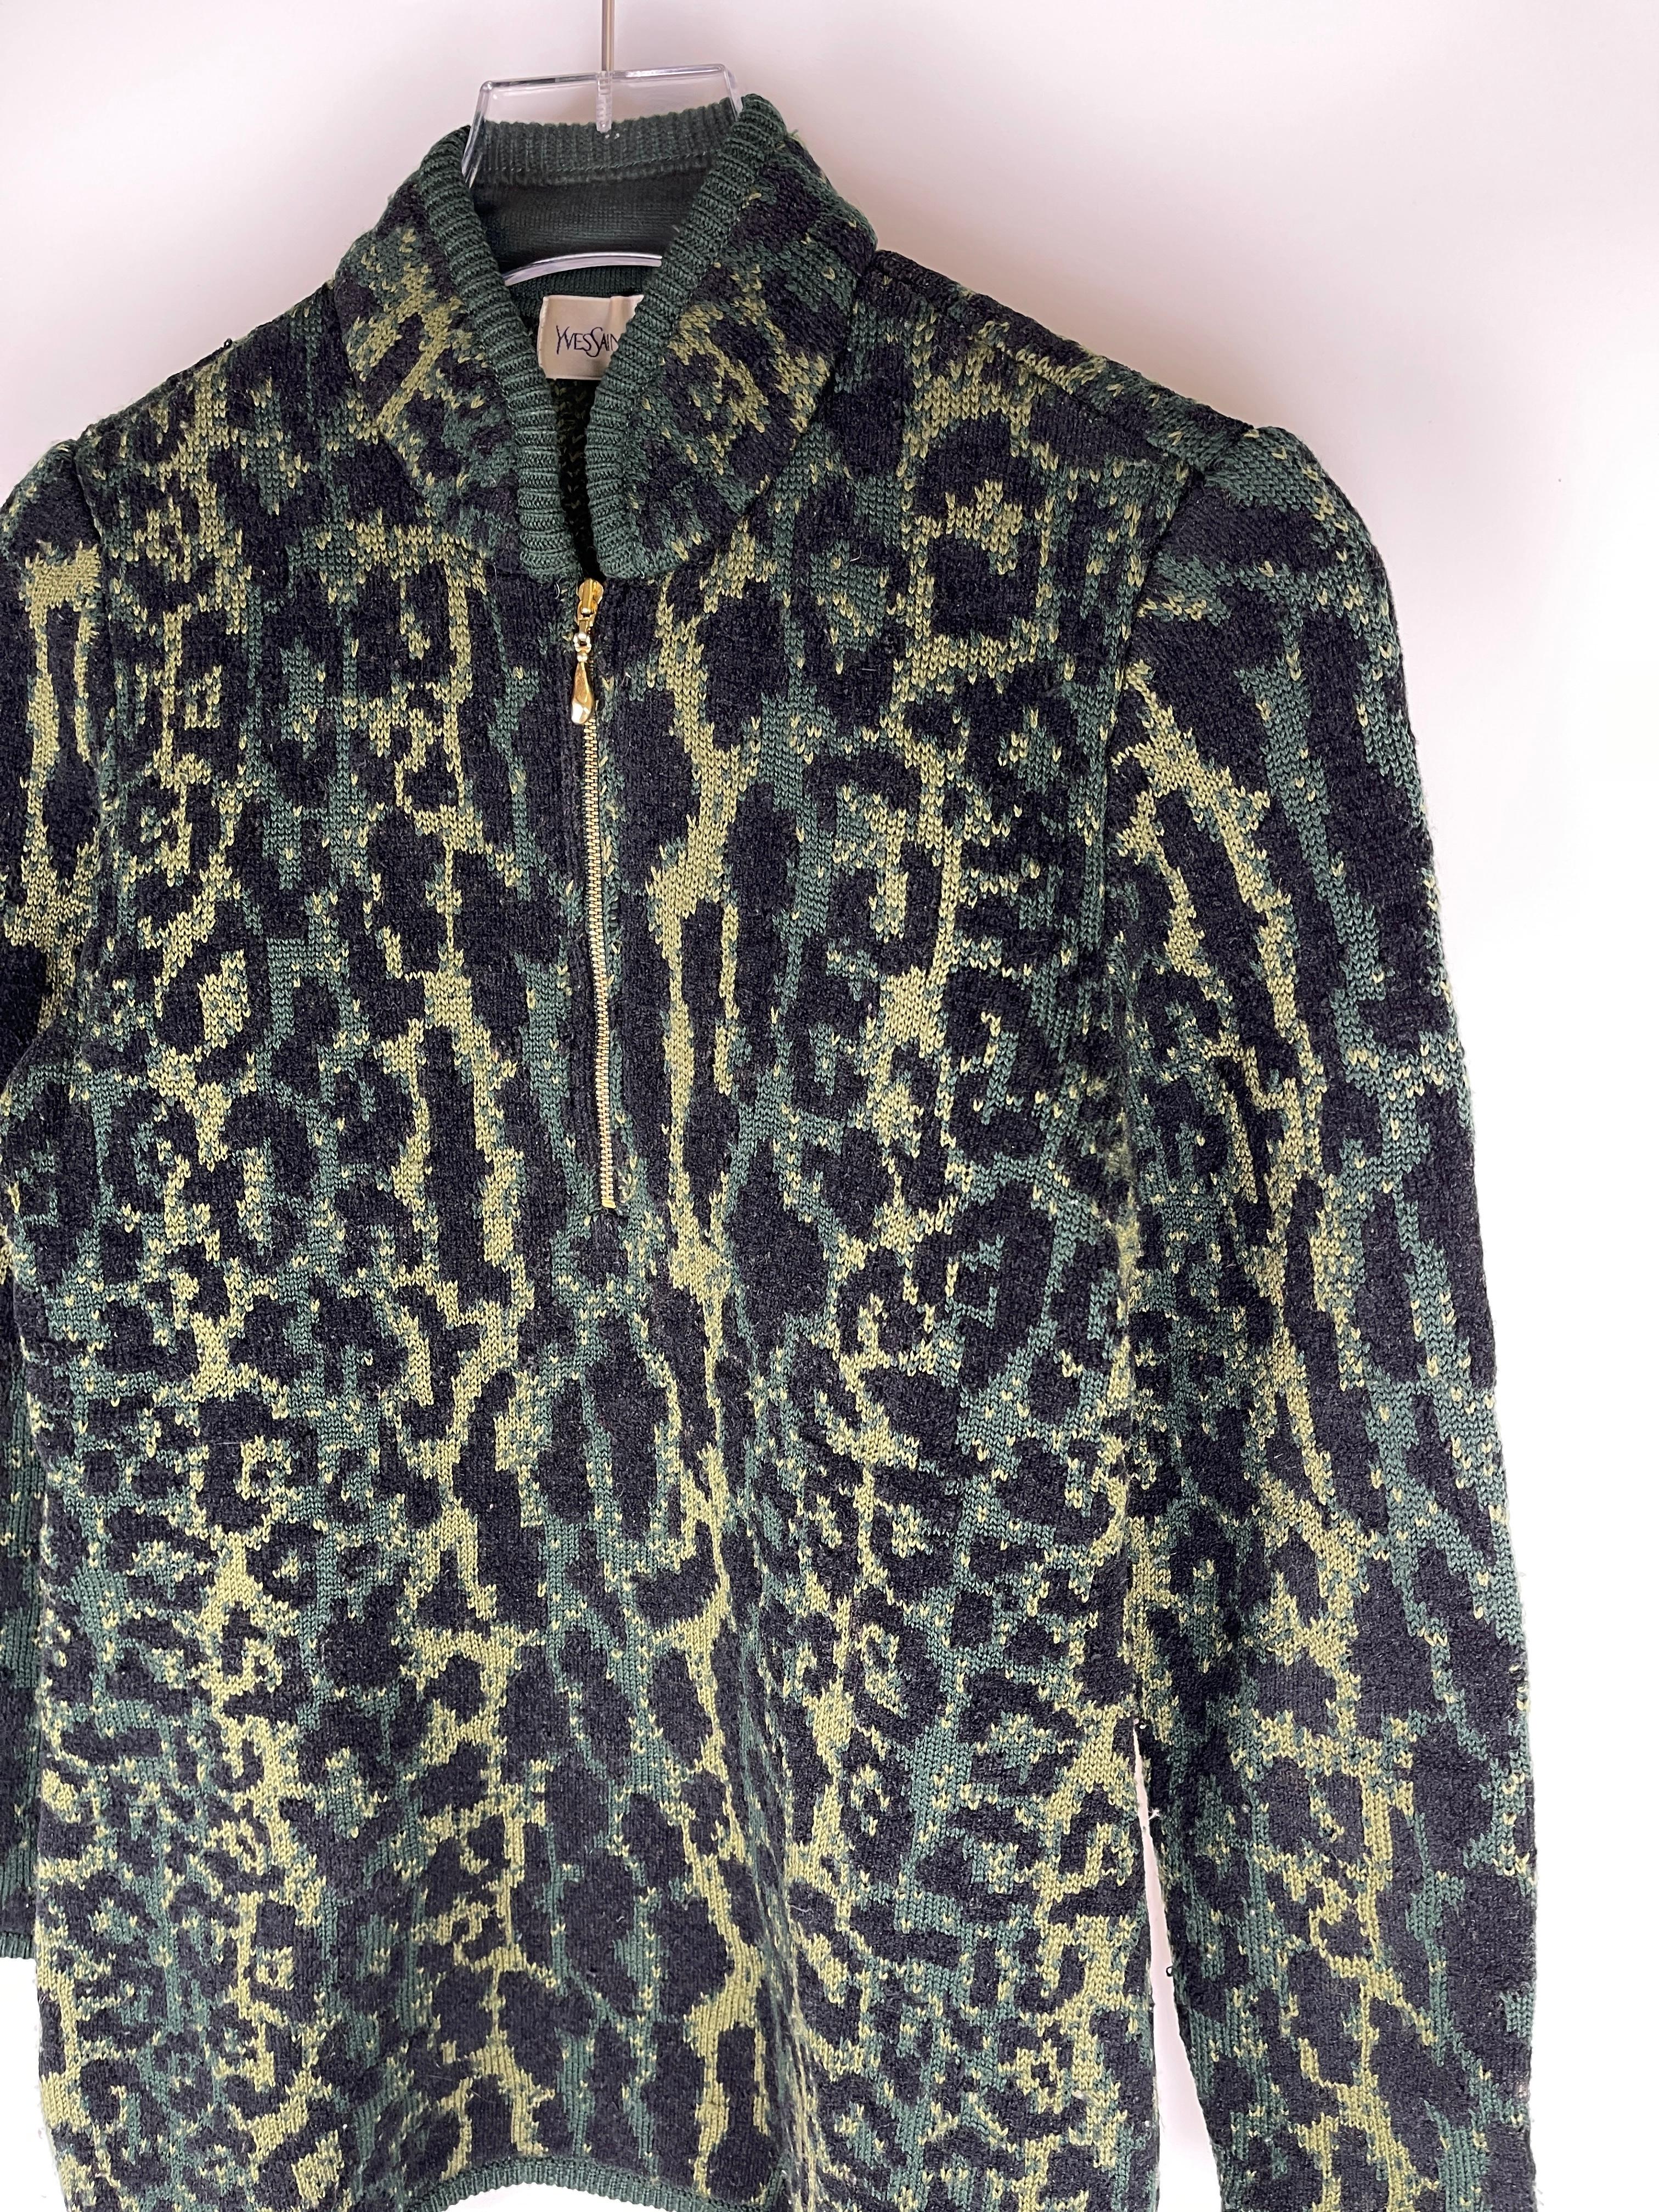 Yves Saint Laurent 1980's Snow Leopard Sweater  For Sale 3